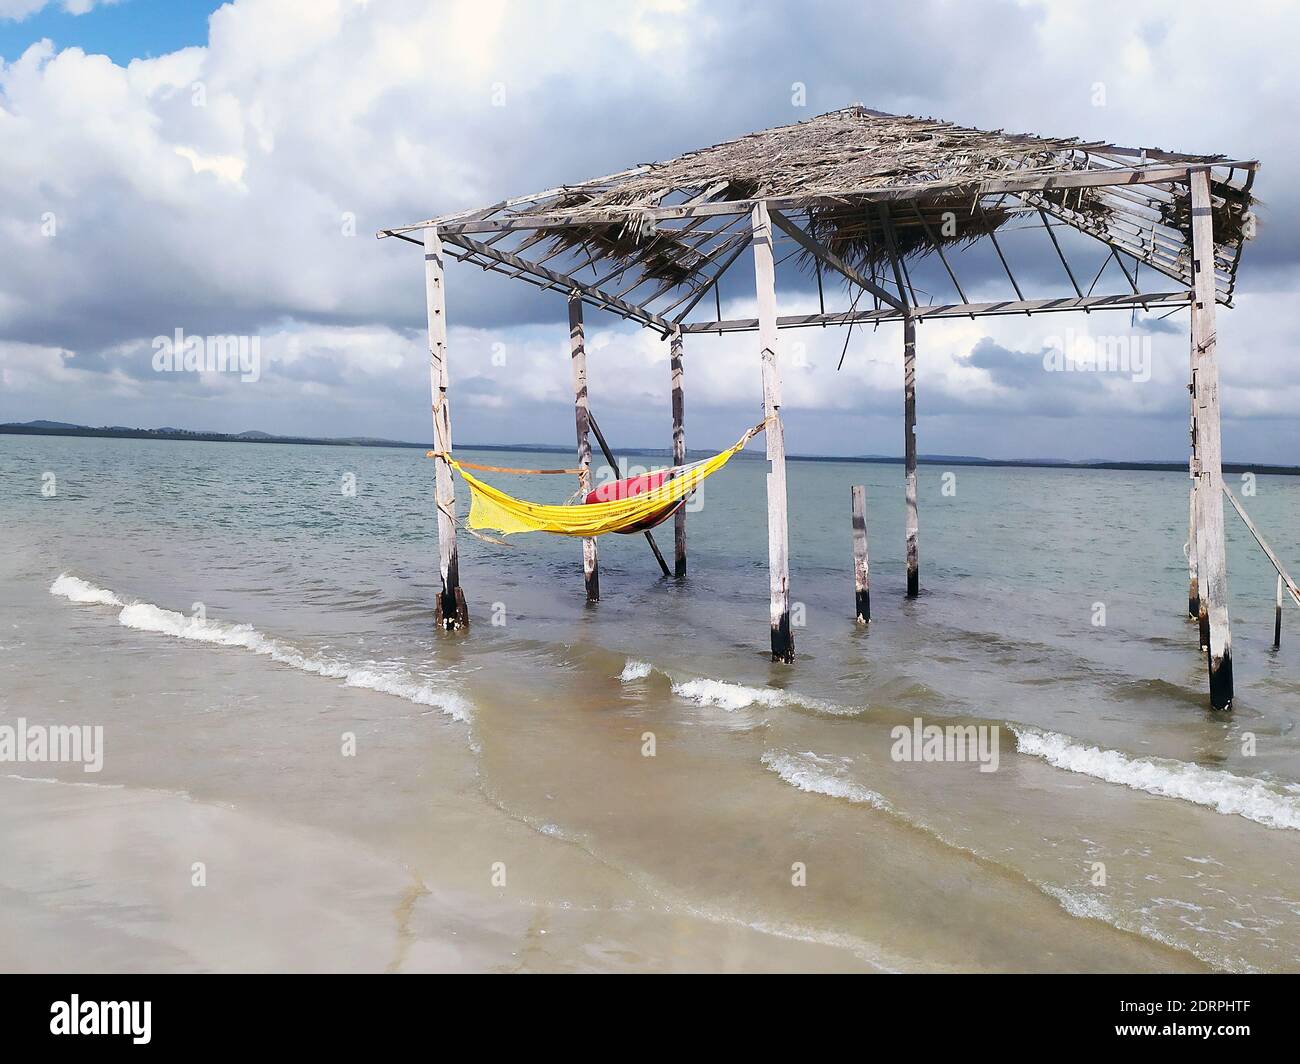 Tente rustique et ancienne avec hamac à l'intérieur de la plage. Plage déserte de Mangue Seco; Jandaira; Bahia; Brésil Banque D'Images